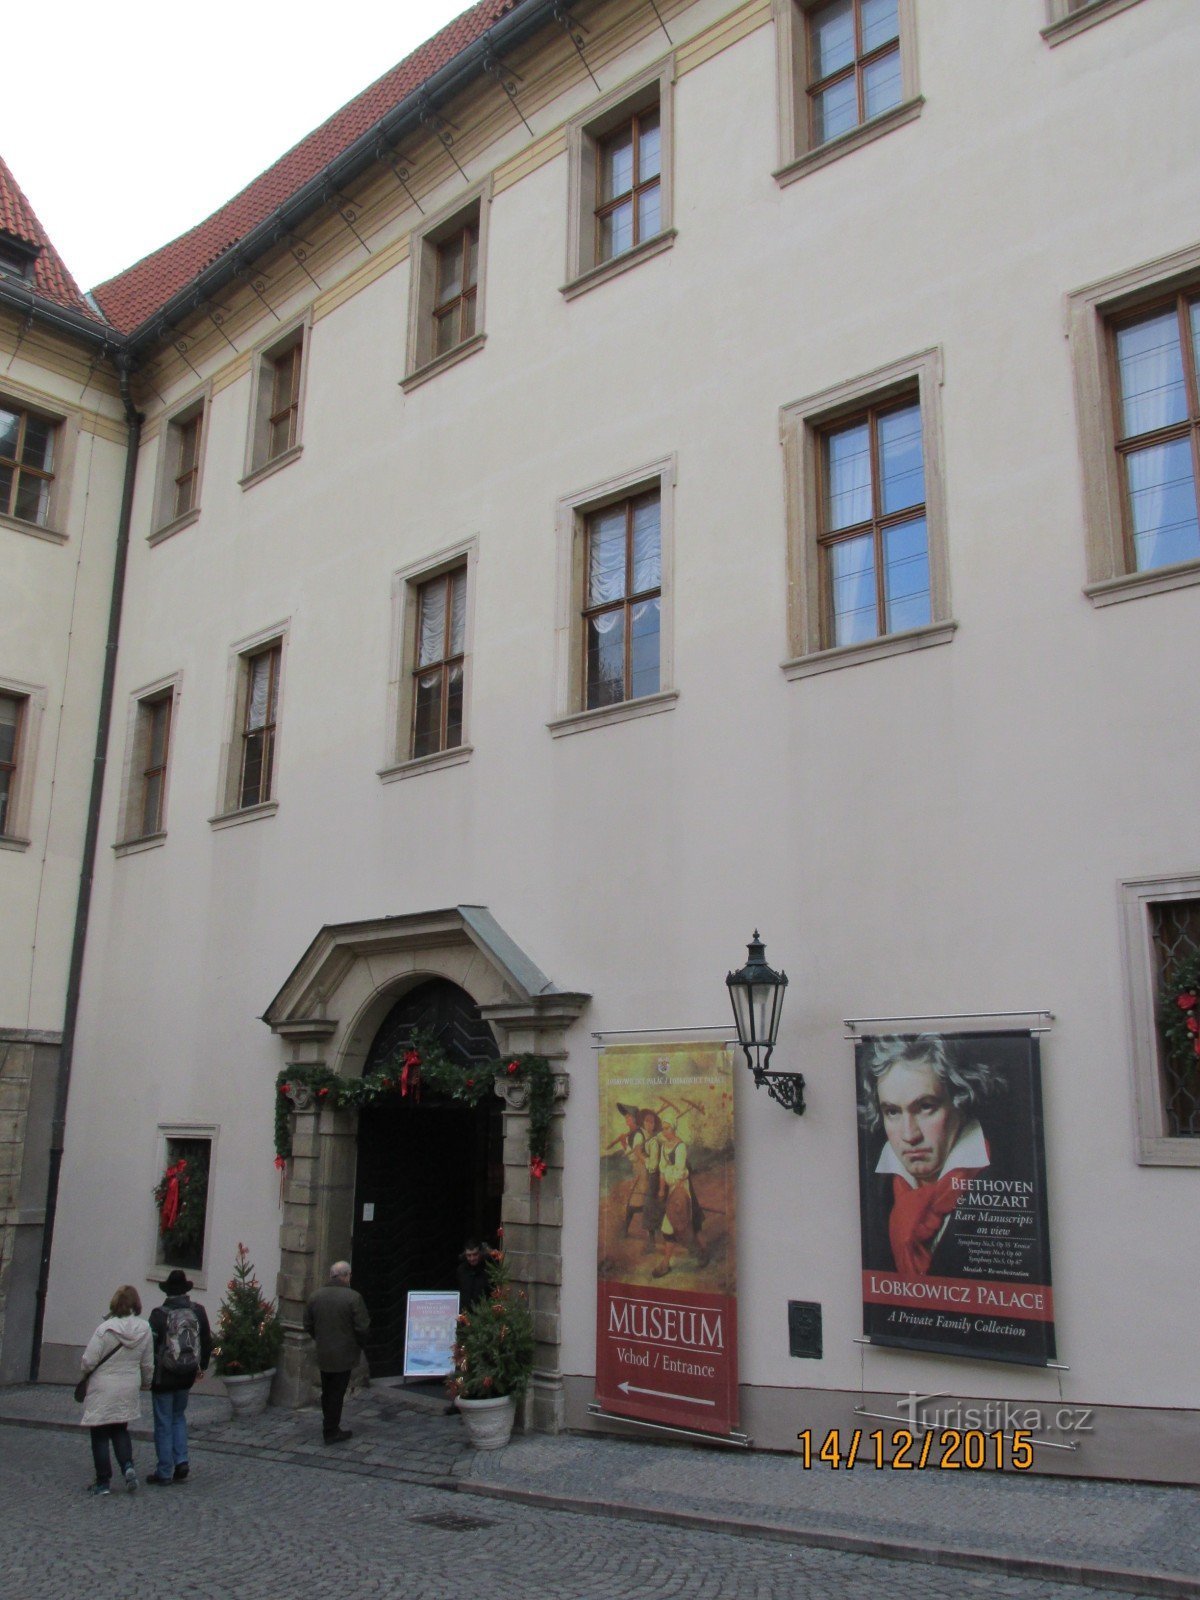 洛布科维茨宫博物馆